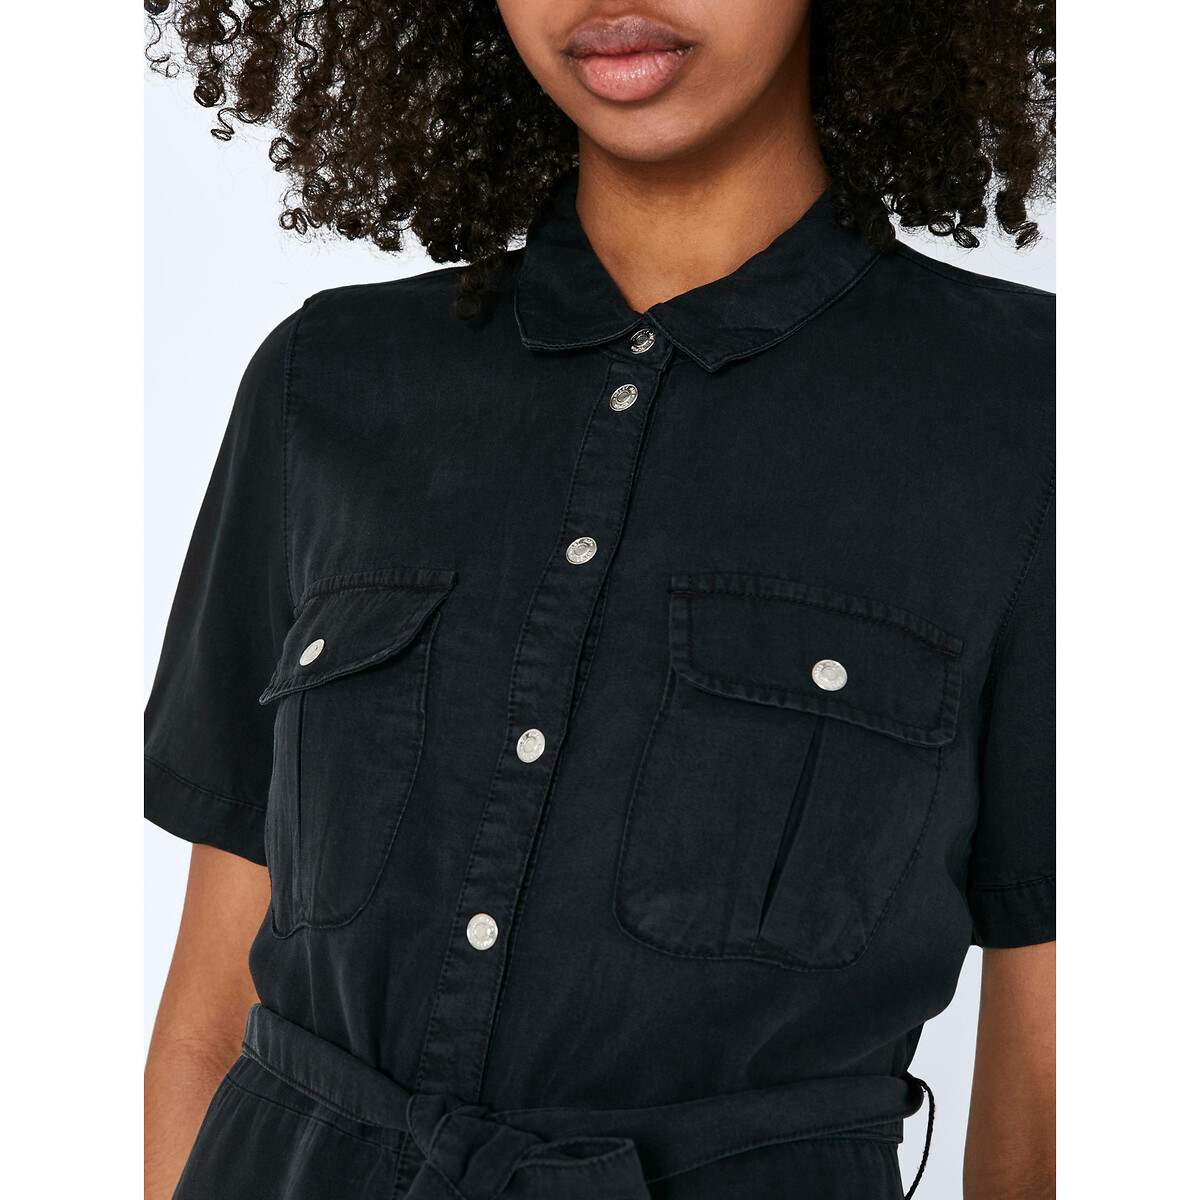 Платье-рубашка Длинное на завязках L черный LaRedoute, размер L - фото 5